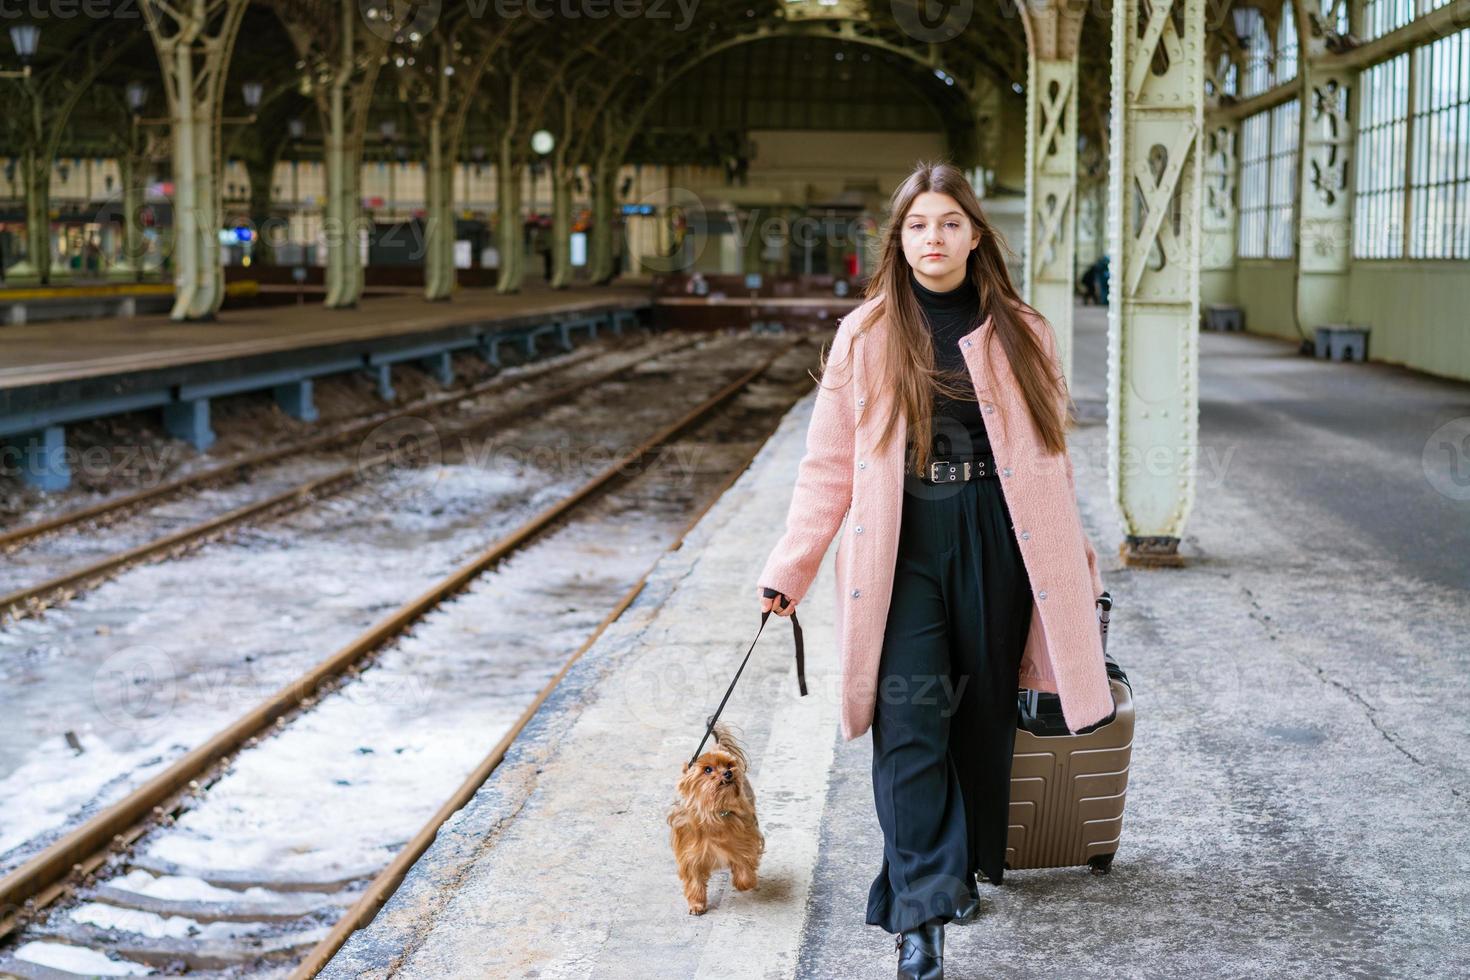 bâtiment de gare vide. jeune femme passagère se tient avec une valise et un petit photo